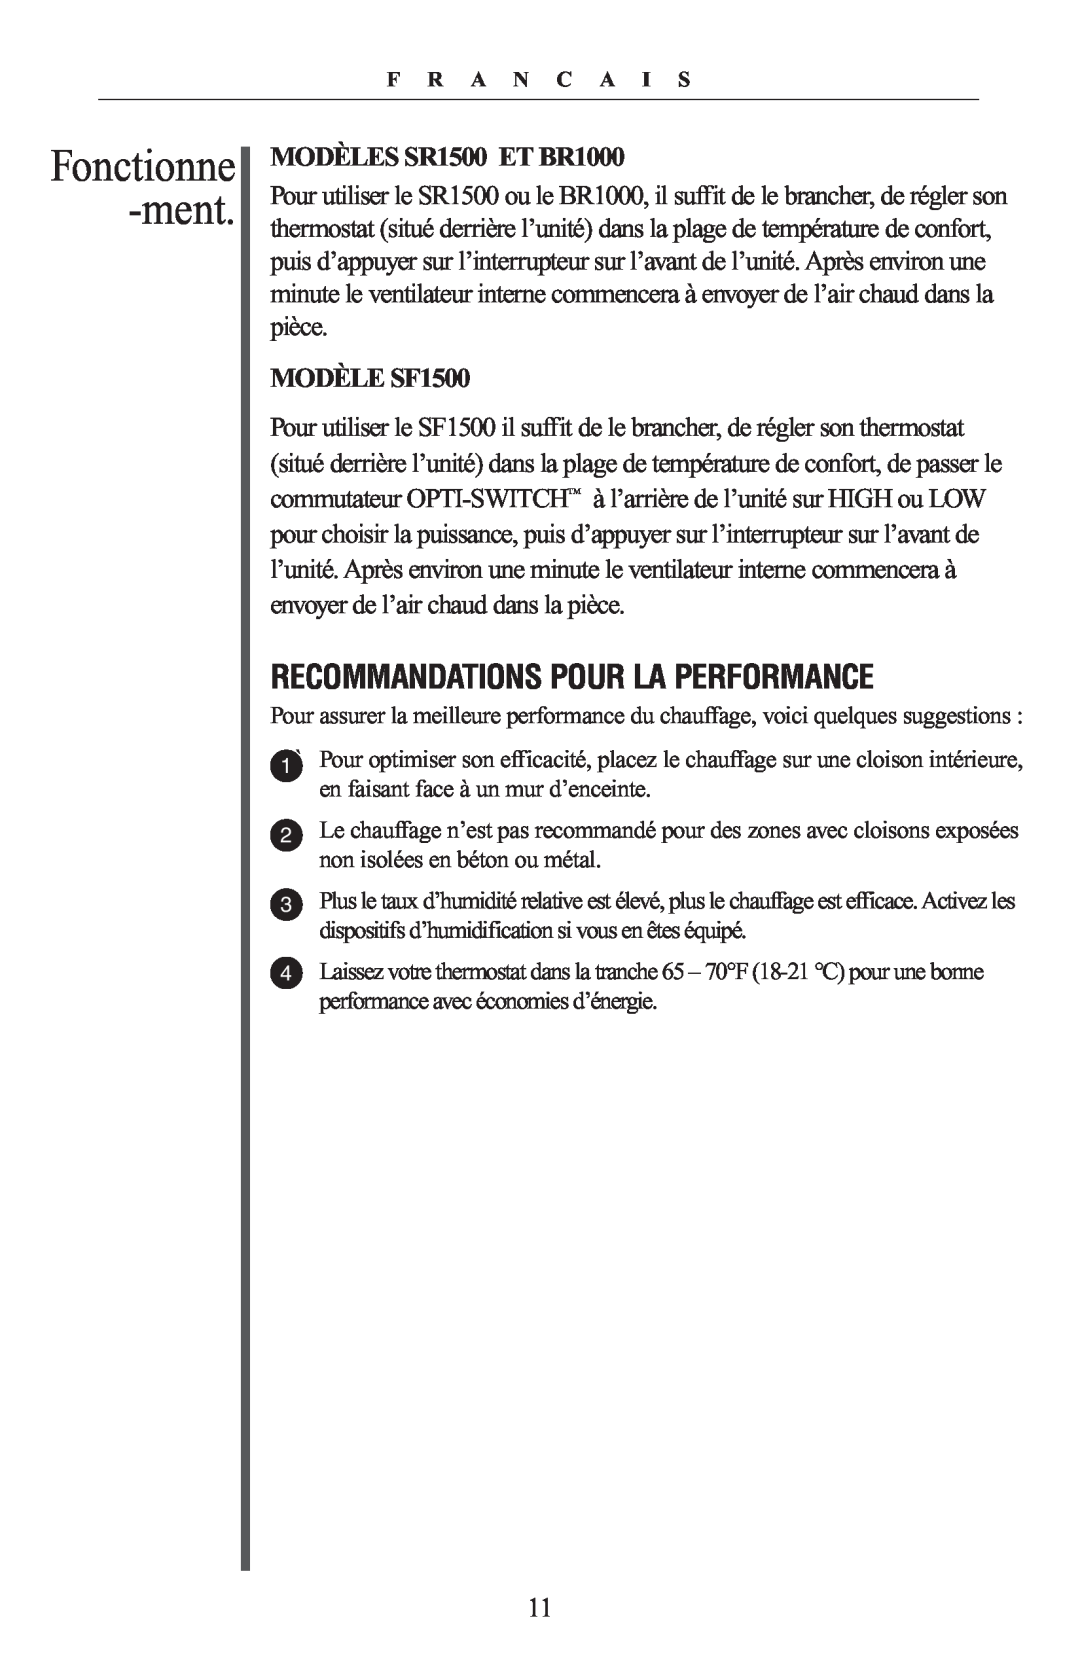 Oreck warranty Fonctionne -ment, Recommandations Pour La Performance, MODÈLES SR1500 ET BR1000, MODÈLE SF1500 